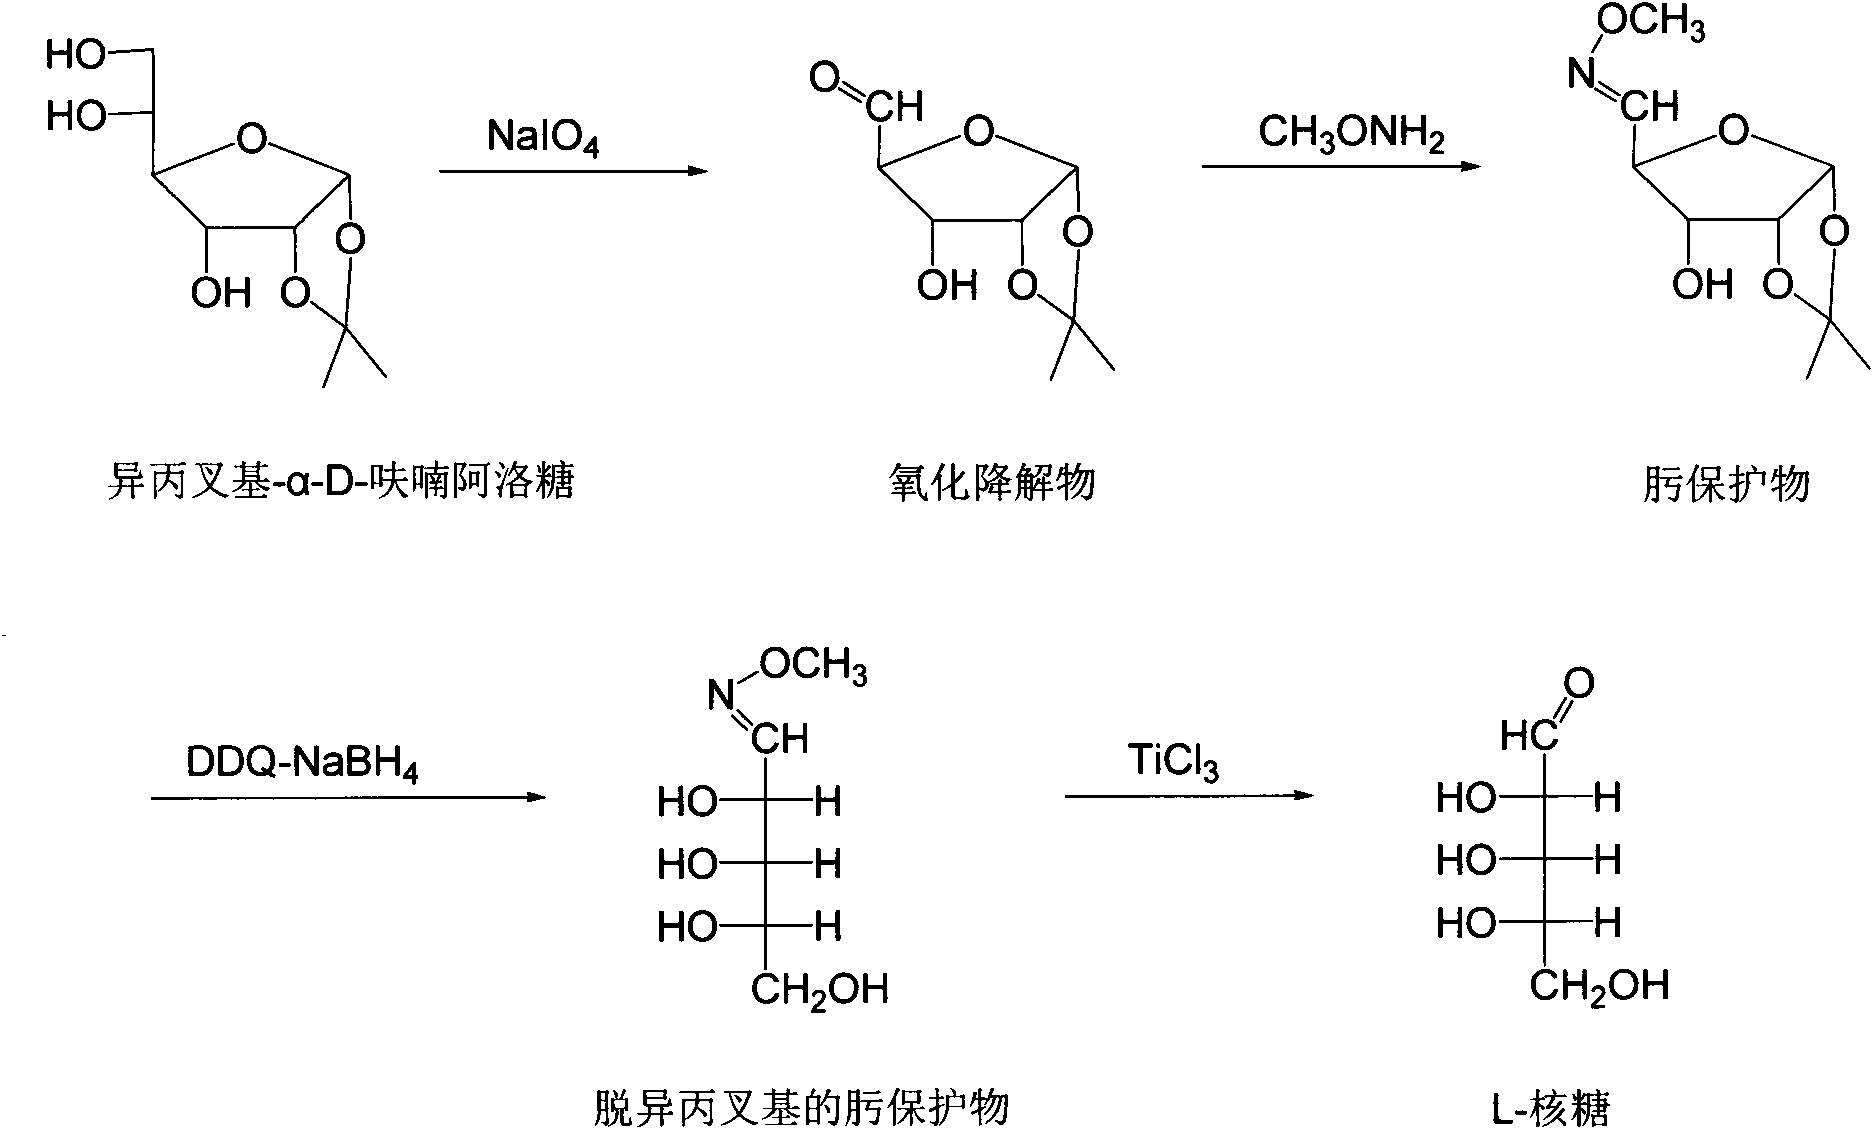 Chemical preparation method of L-ribose